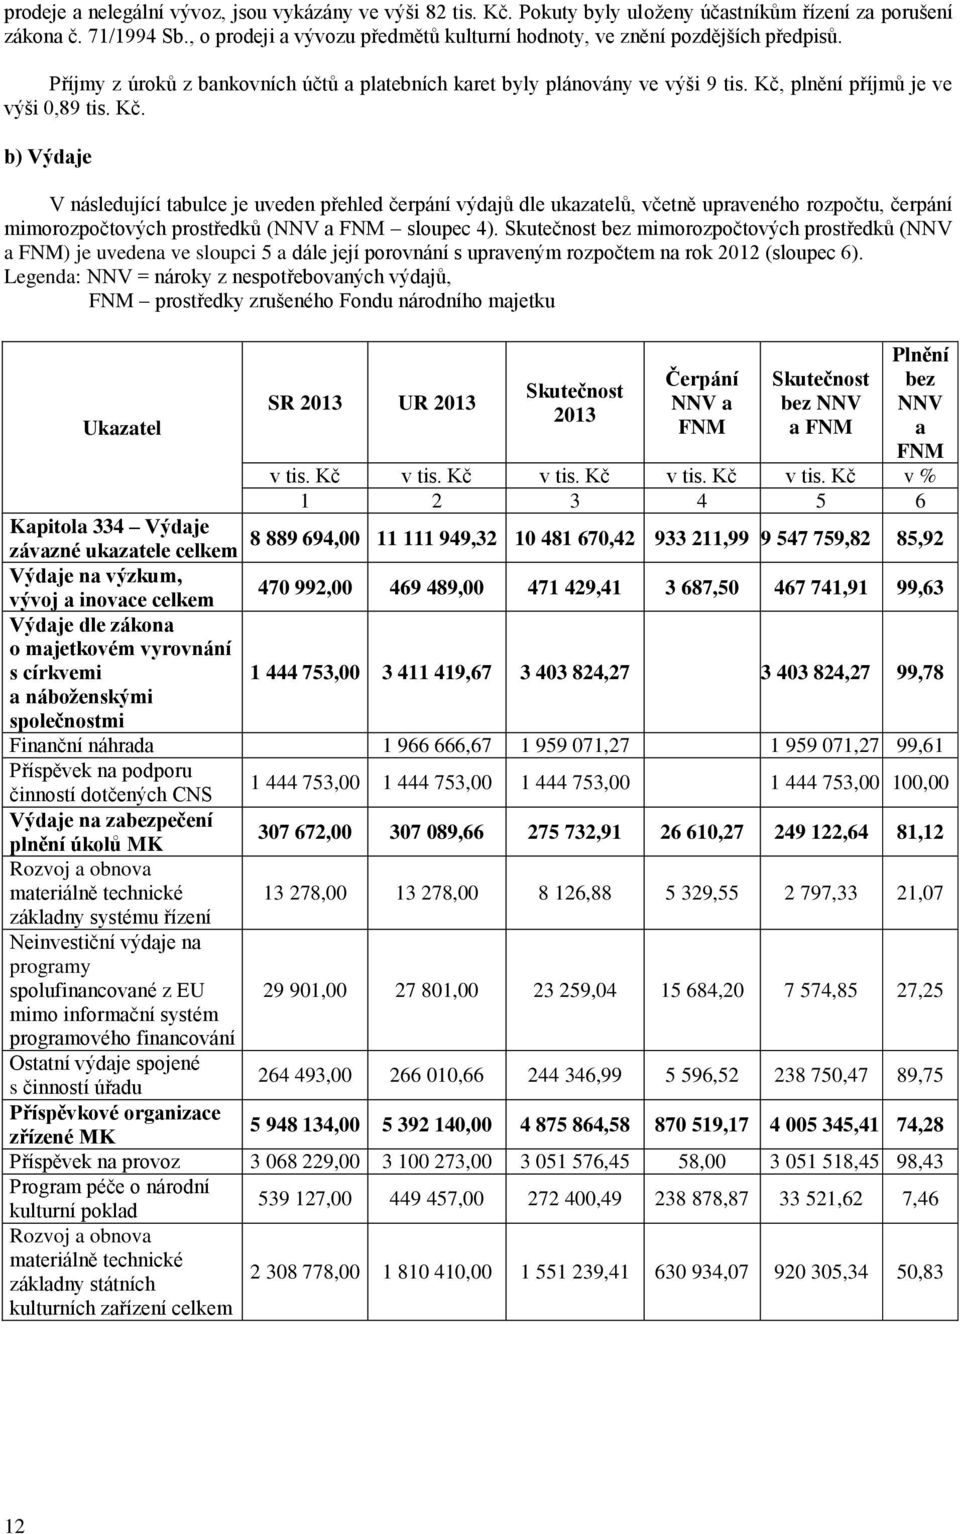 Kč. b) Výdaje V následující tabulce je uveden přehled čerpání výdajů dle ukazatelů, včetně upraveného rozpočtu, čerpání mimorozpočtových prostředků (NNV a FNM sloupec 4).